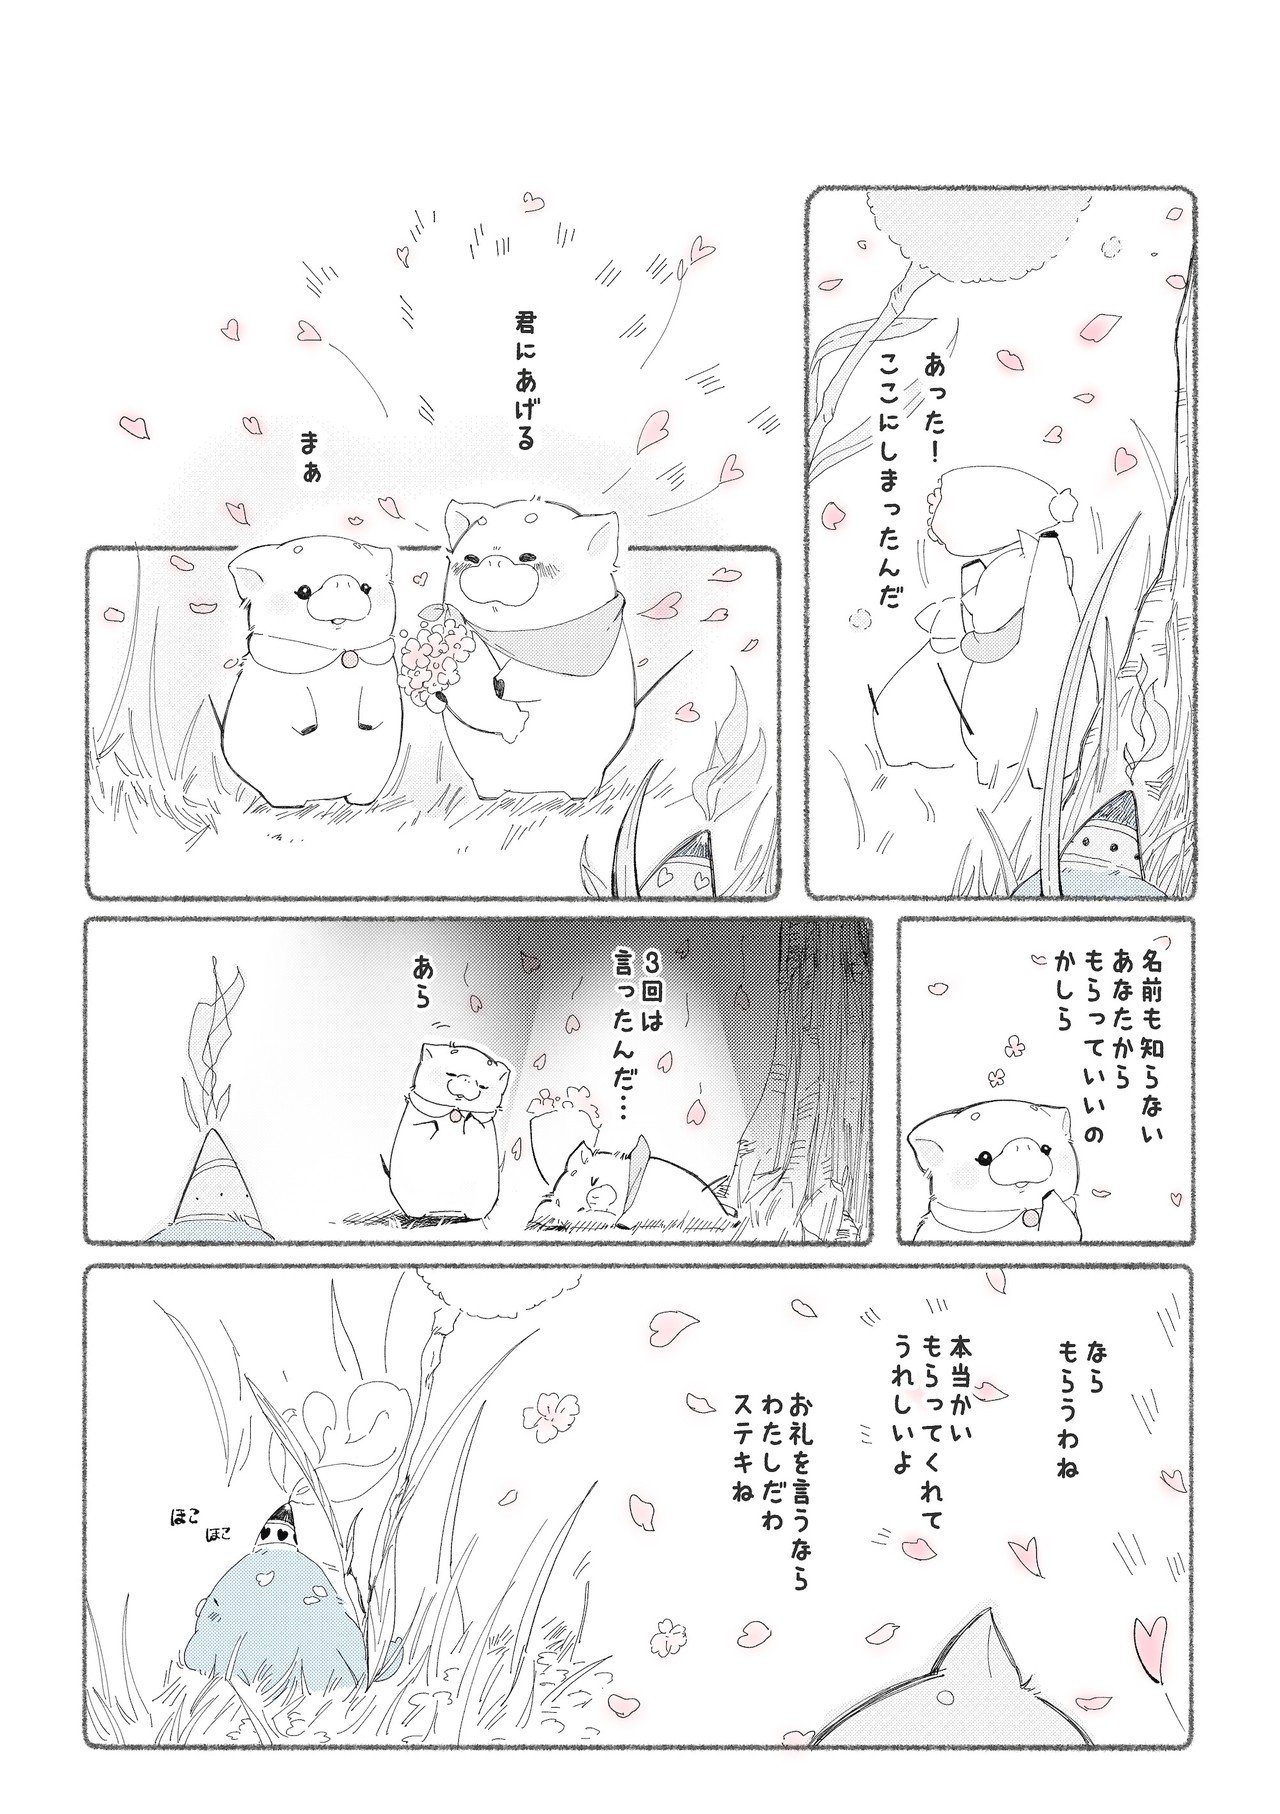 ロウソクくん_漫画4